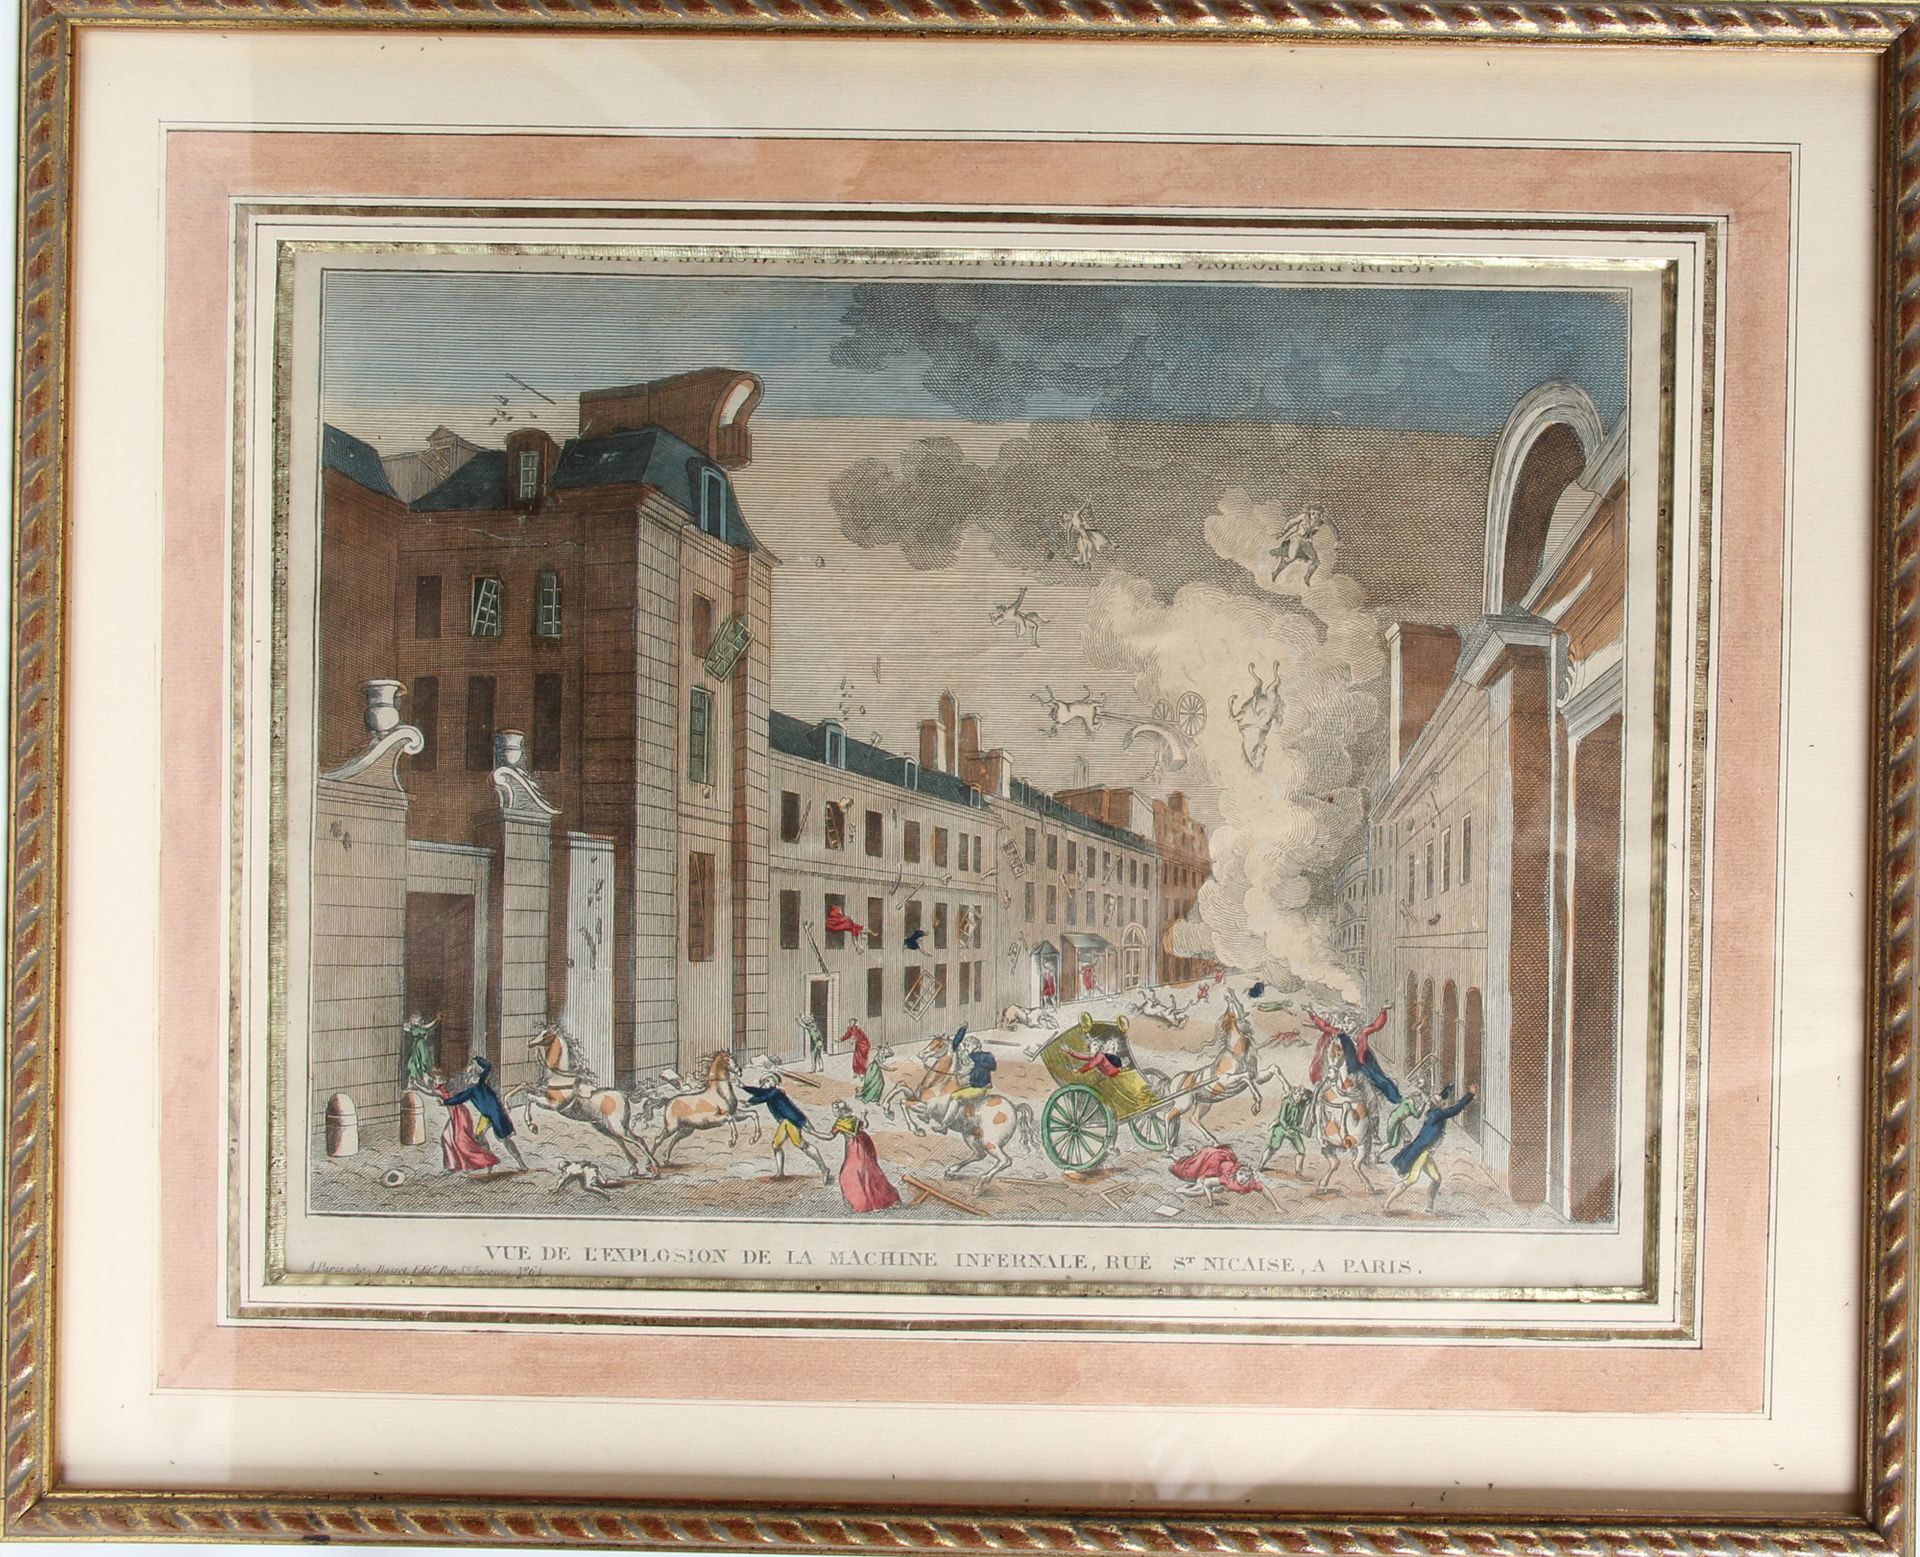 Null 光学视图 

18世纪的法国学校。

"巴黎圣尼凯斯街，无间道机器爆炸的景象 

尺寸：28,5 x 38 cm